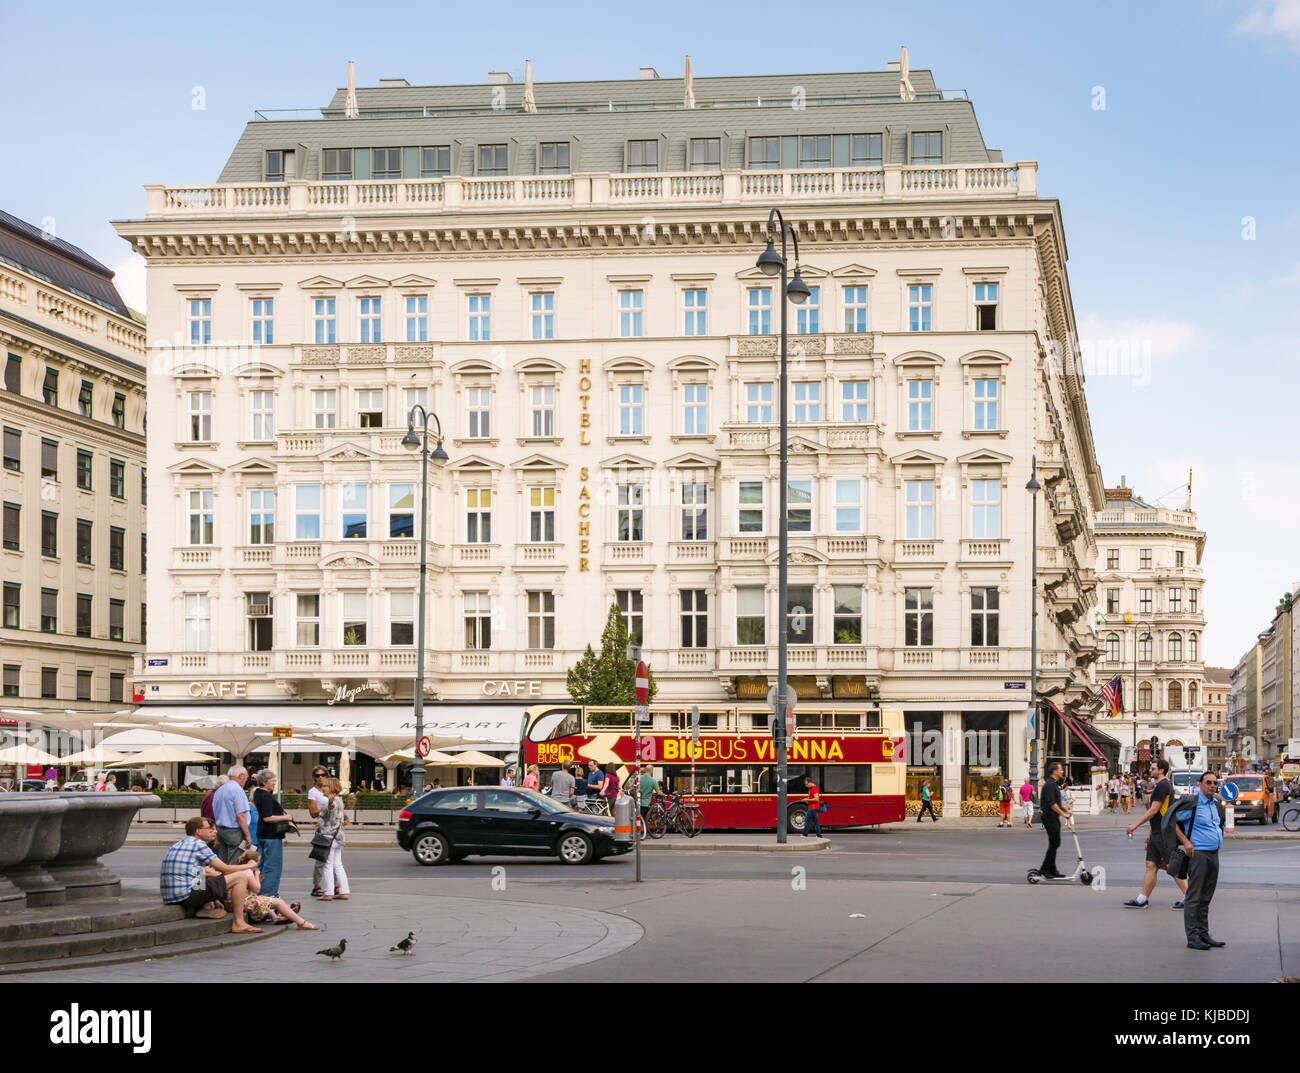 Vienne, Autriche - août 28 : les touristes à l'hôtel Sacher, à Vienne, Autriche Le 28 août 2017. Il est célèbre pour la spécialité de la maison, la sa Banque D'Images